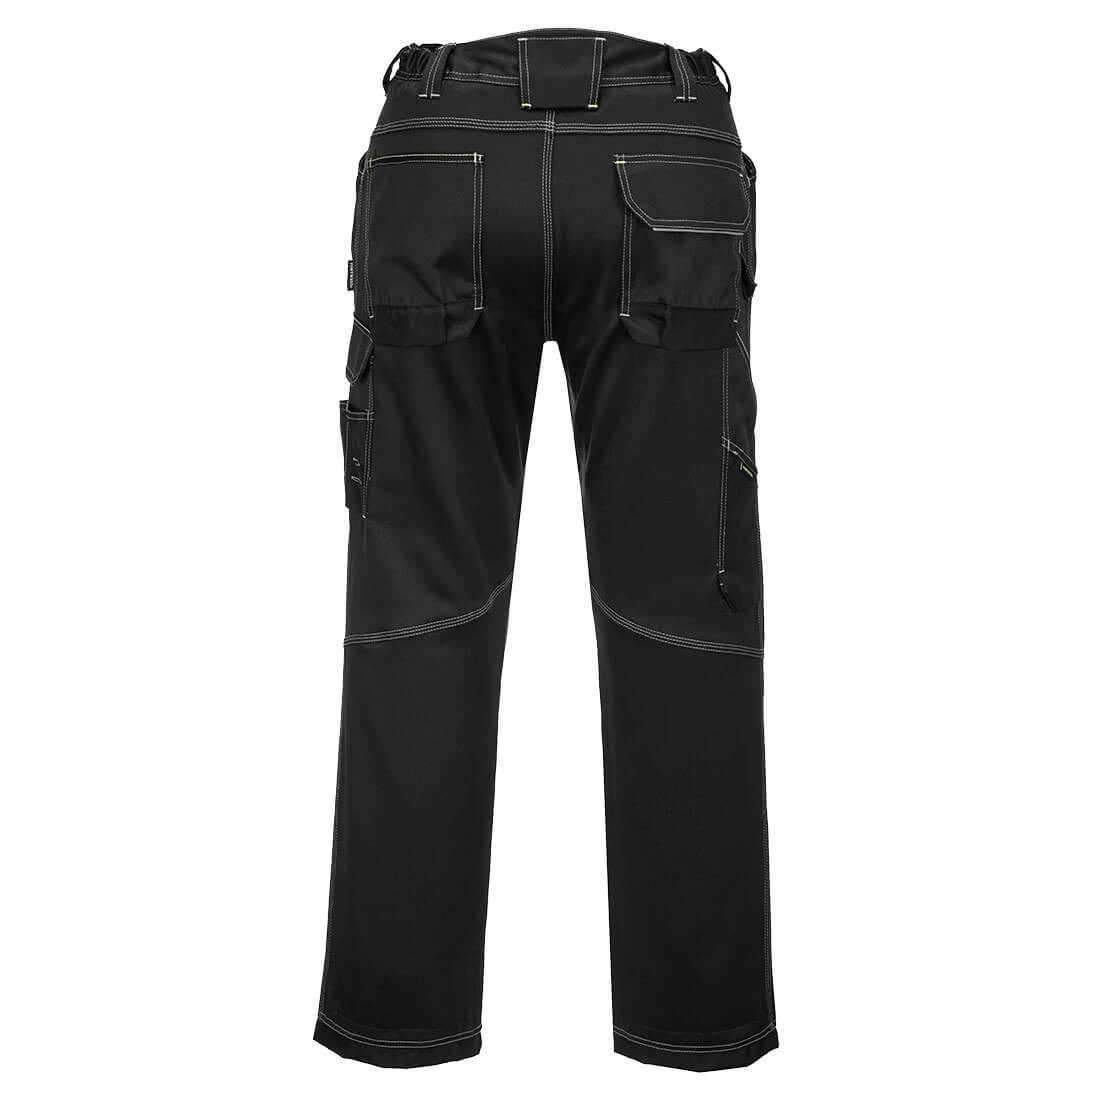 Pantaloni de iarna captusiti PW3 - Imbracaminte de protectie